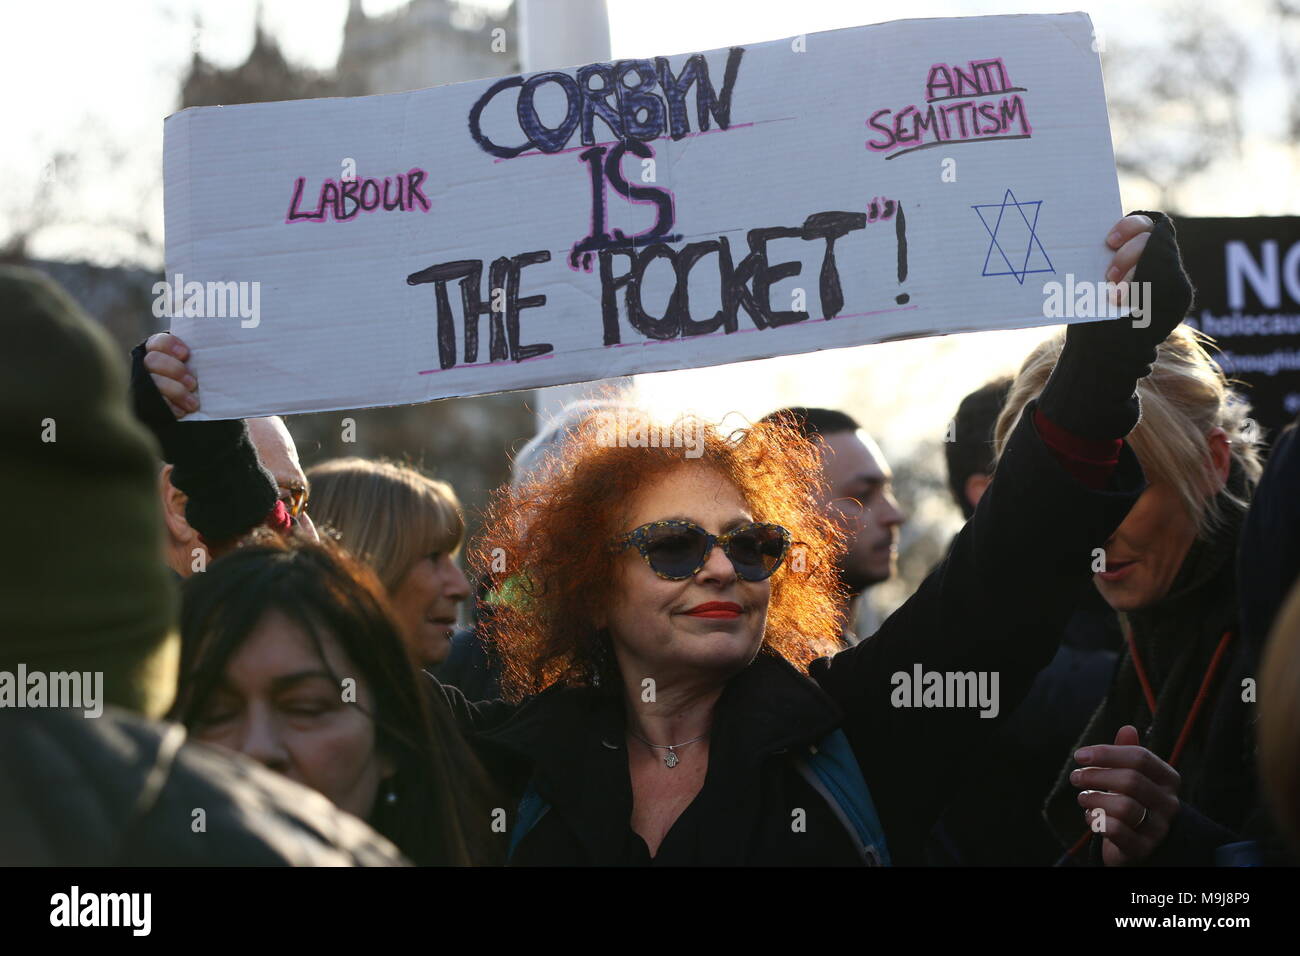 In der Labour-Partei auf dem Parliament Square in London protestieren Menschen gegen den Antisemitismus, da jüdische Gemeindeführer einen vernichtendem Angriff auf Jeremy Corbyn gestartet haben, der behauptet, er habe sich "immer wieder" auf die Seite der Antisemiten gestellt. Stockfoto